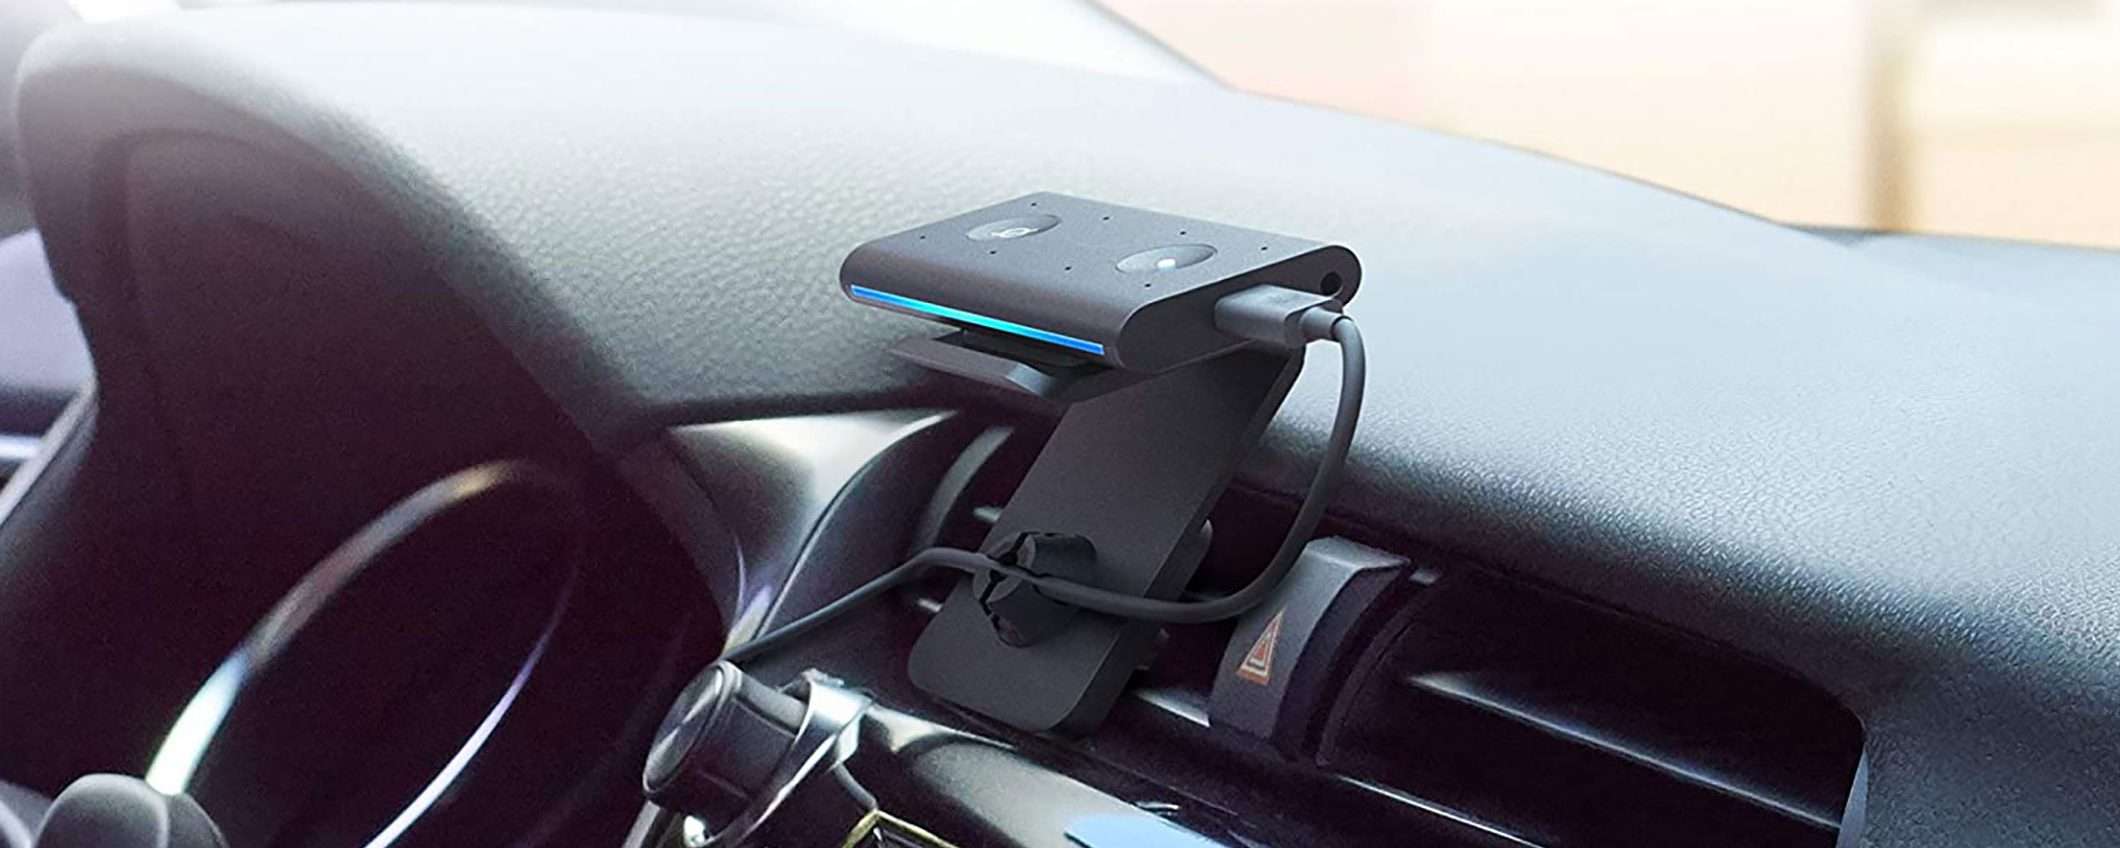 Alexa al volante: Echo Auto a metà prezzo